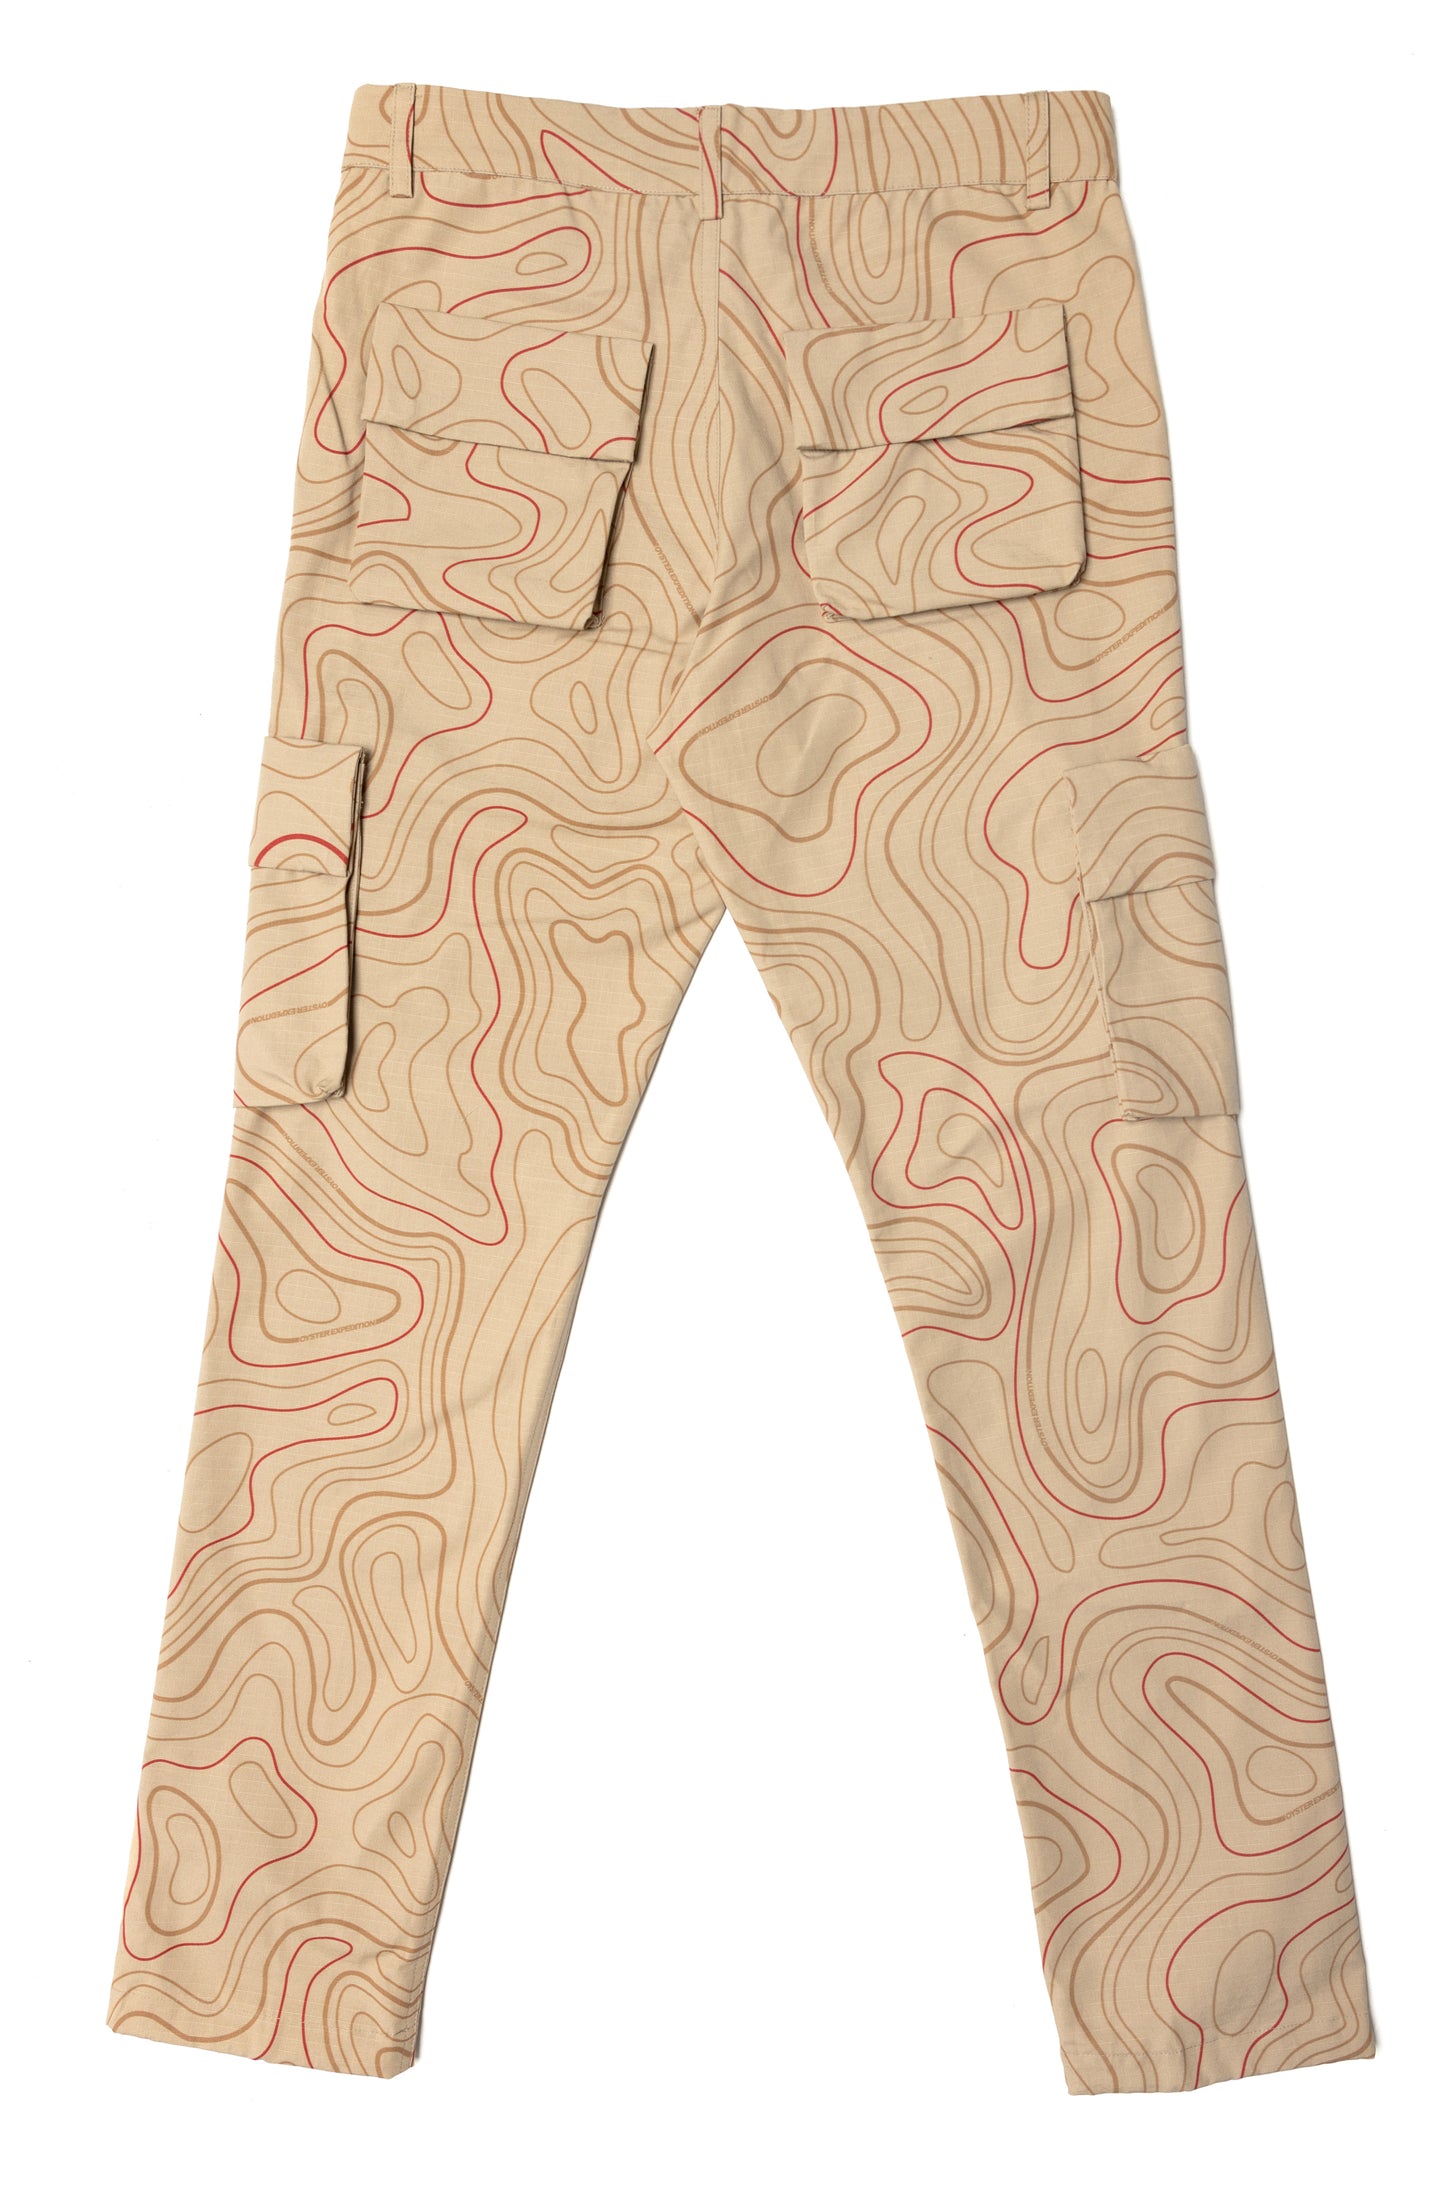 Louis Vuitton Supreme Camo Cargo Pant